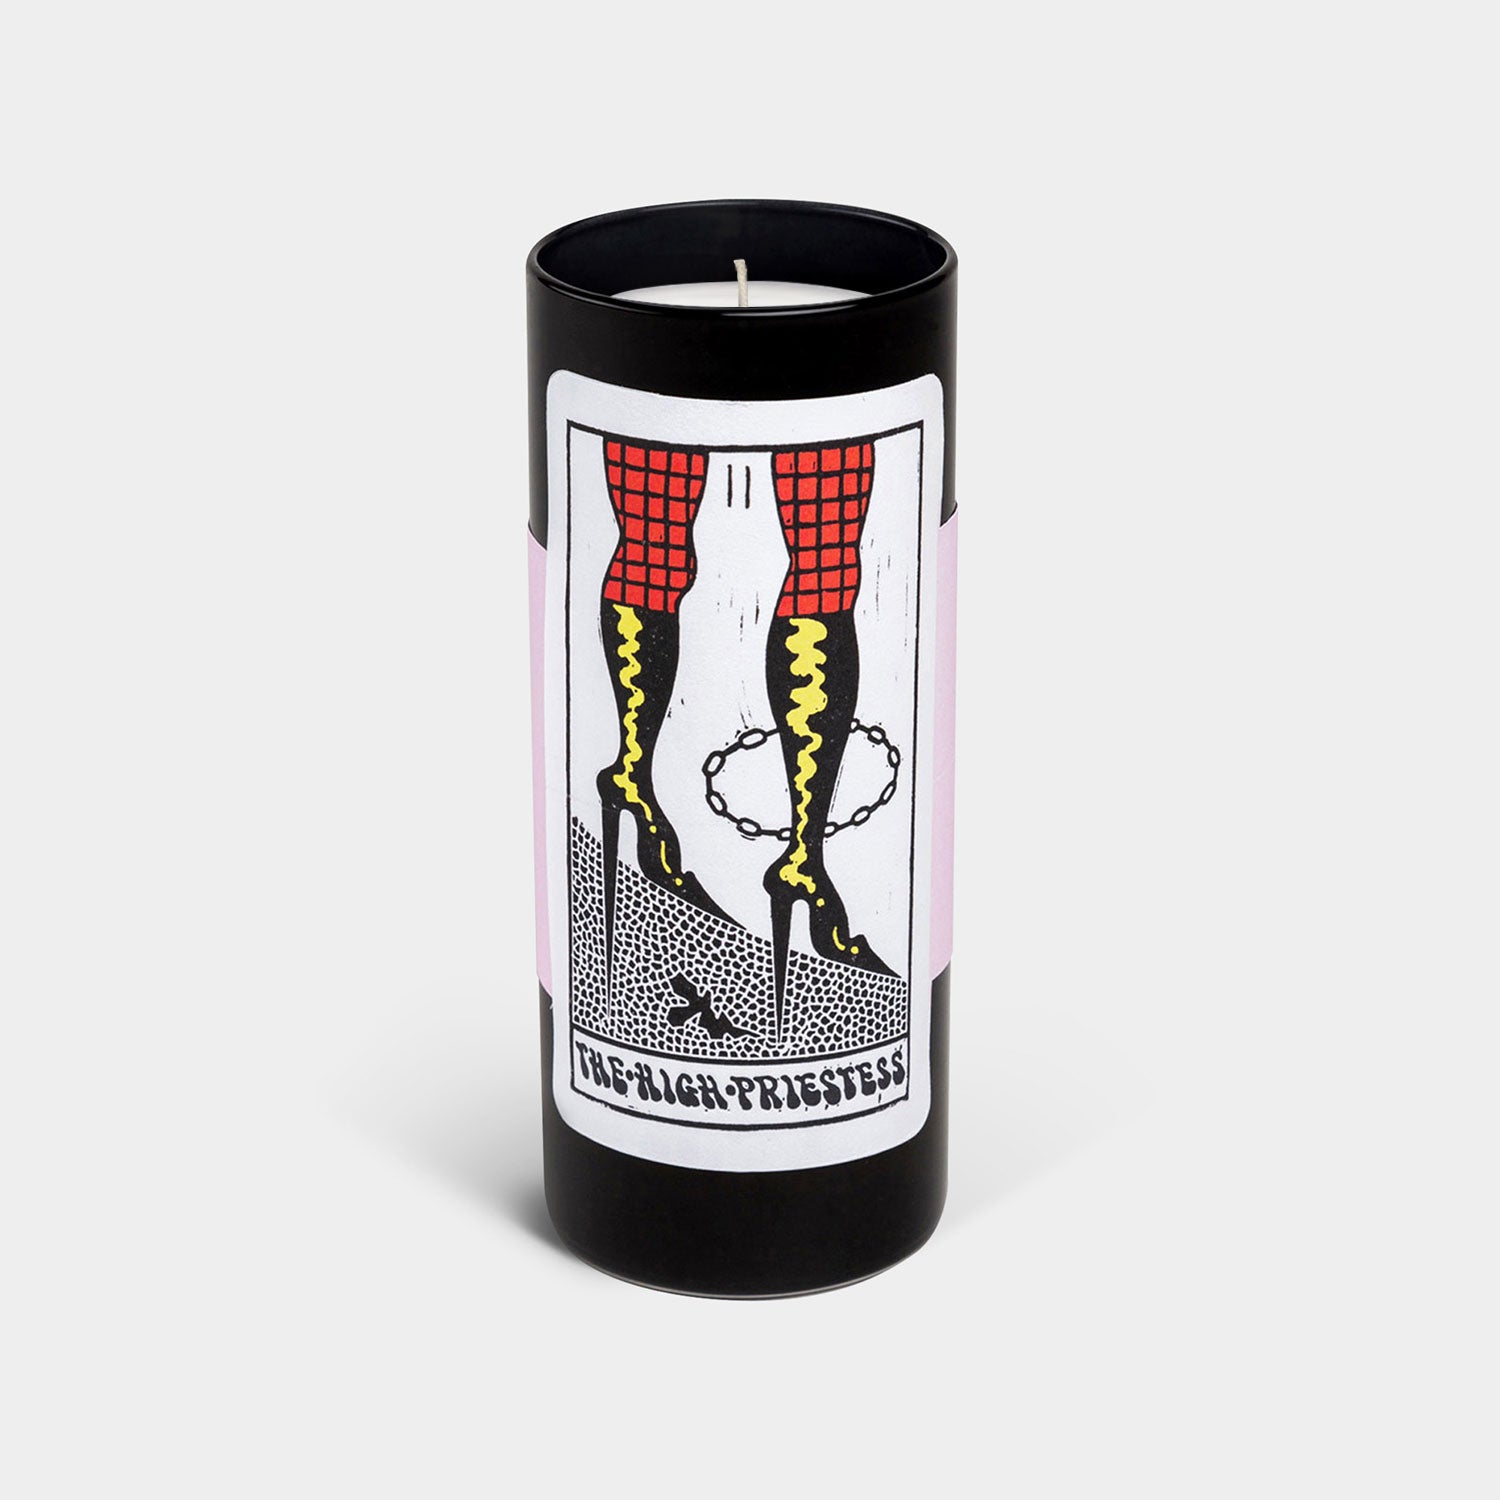 Tarot Candle - The High Priestess